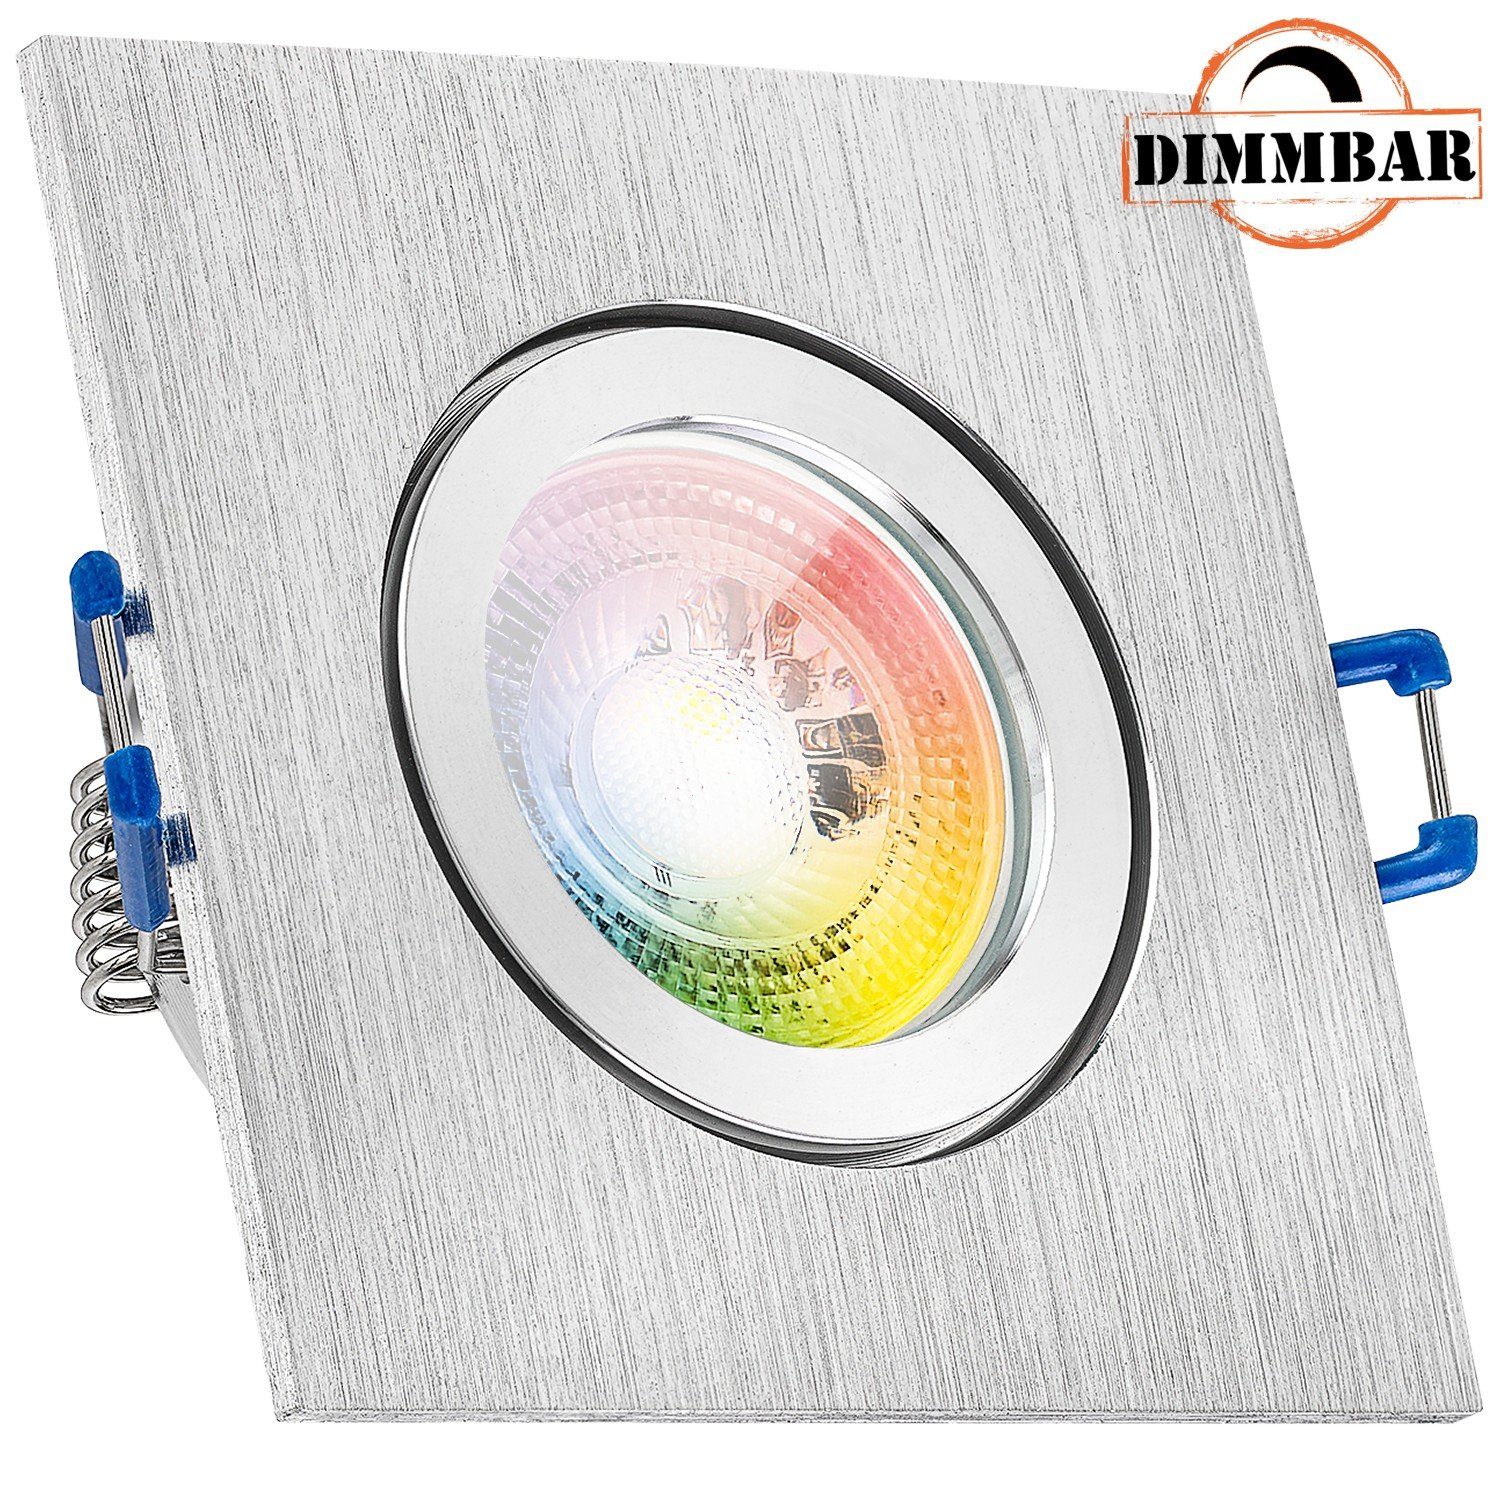 LEDANDO LED Einbaustrahler in RGB gebürstet 3W Set LED mit Einbaustrahler GU10 IP44 aluminium LED